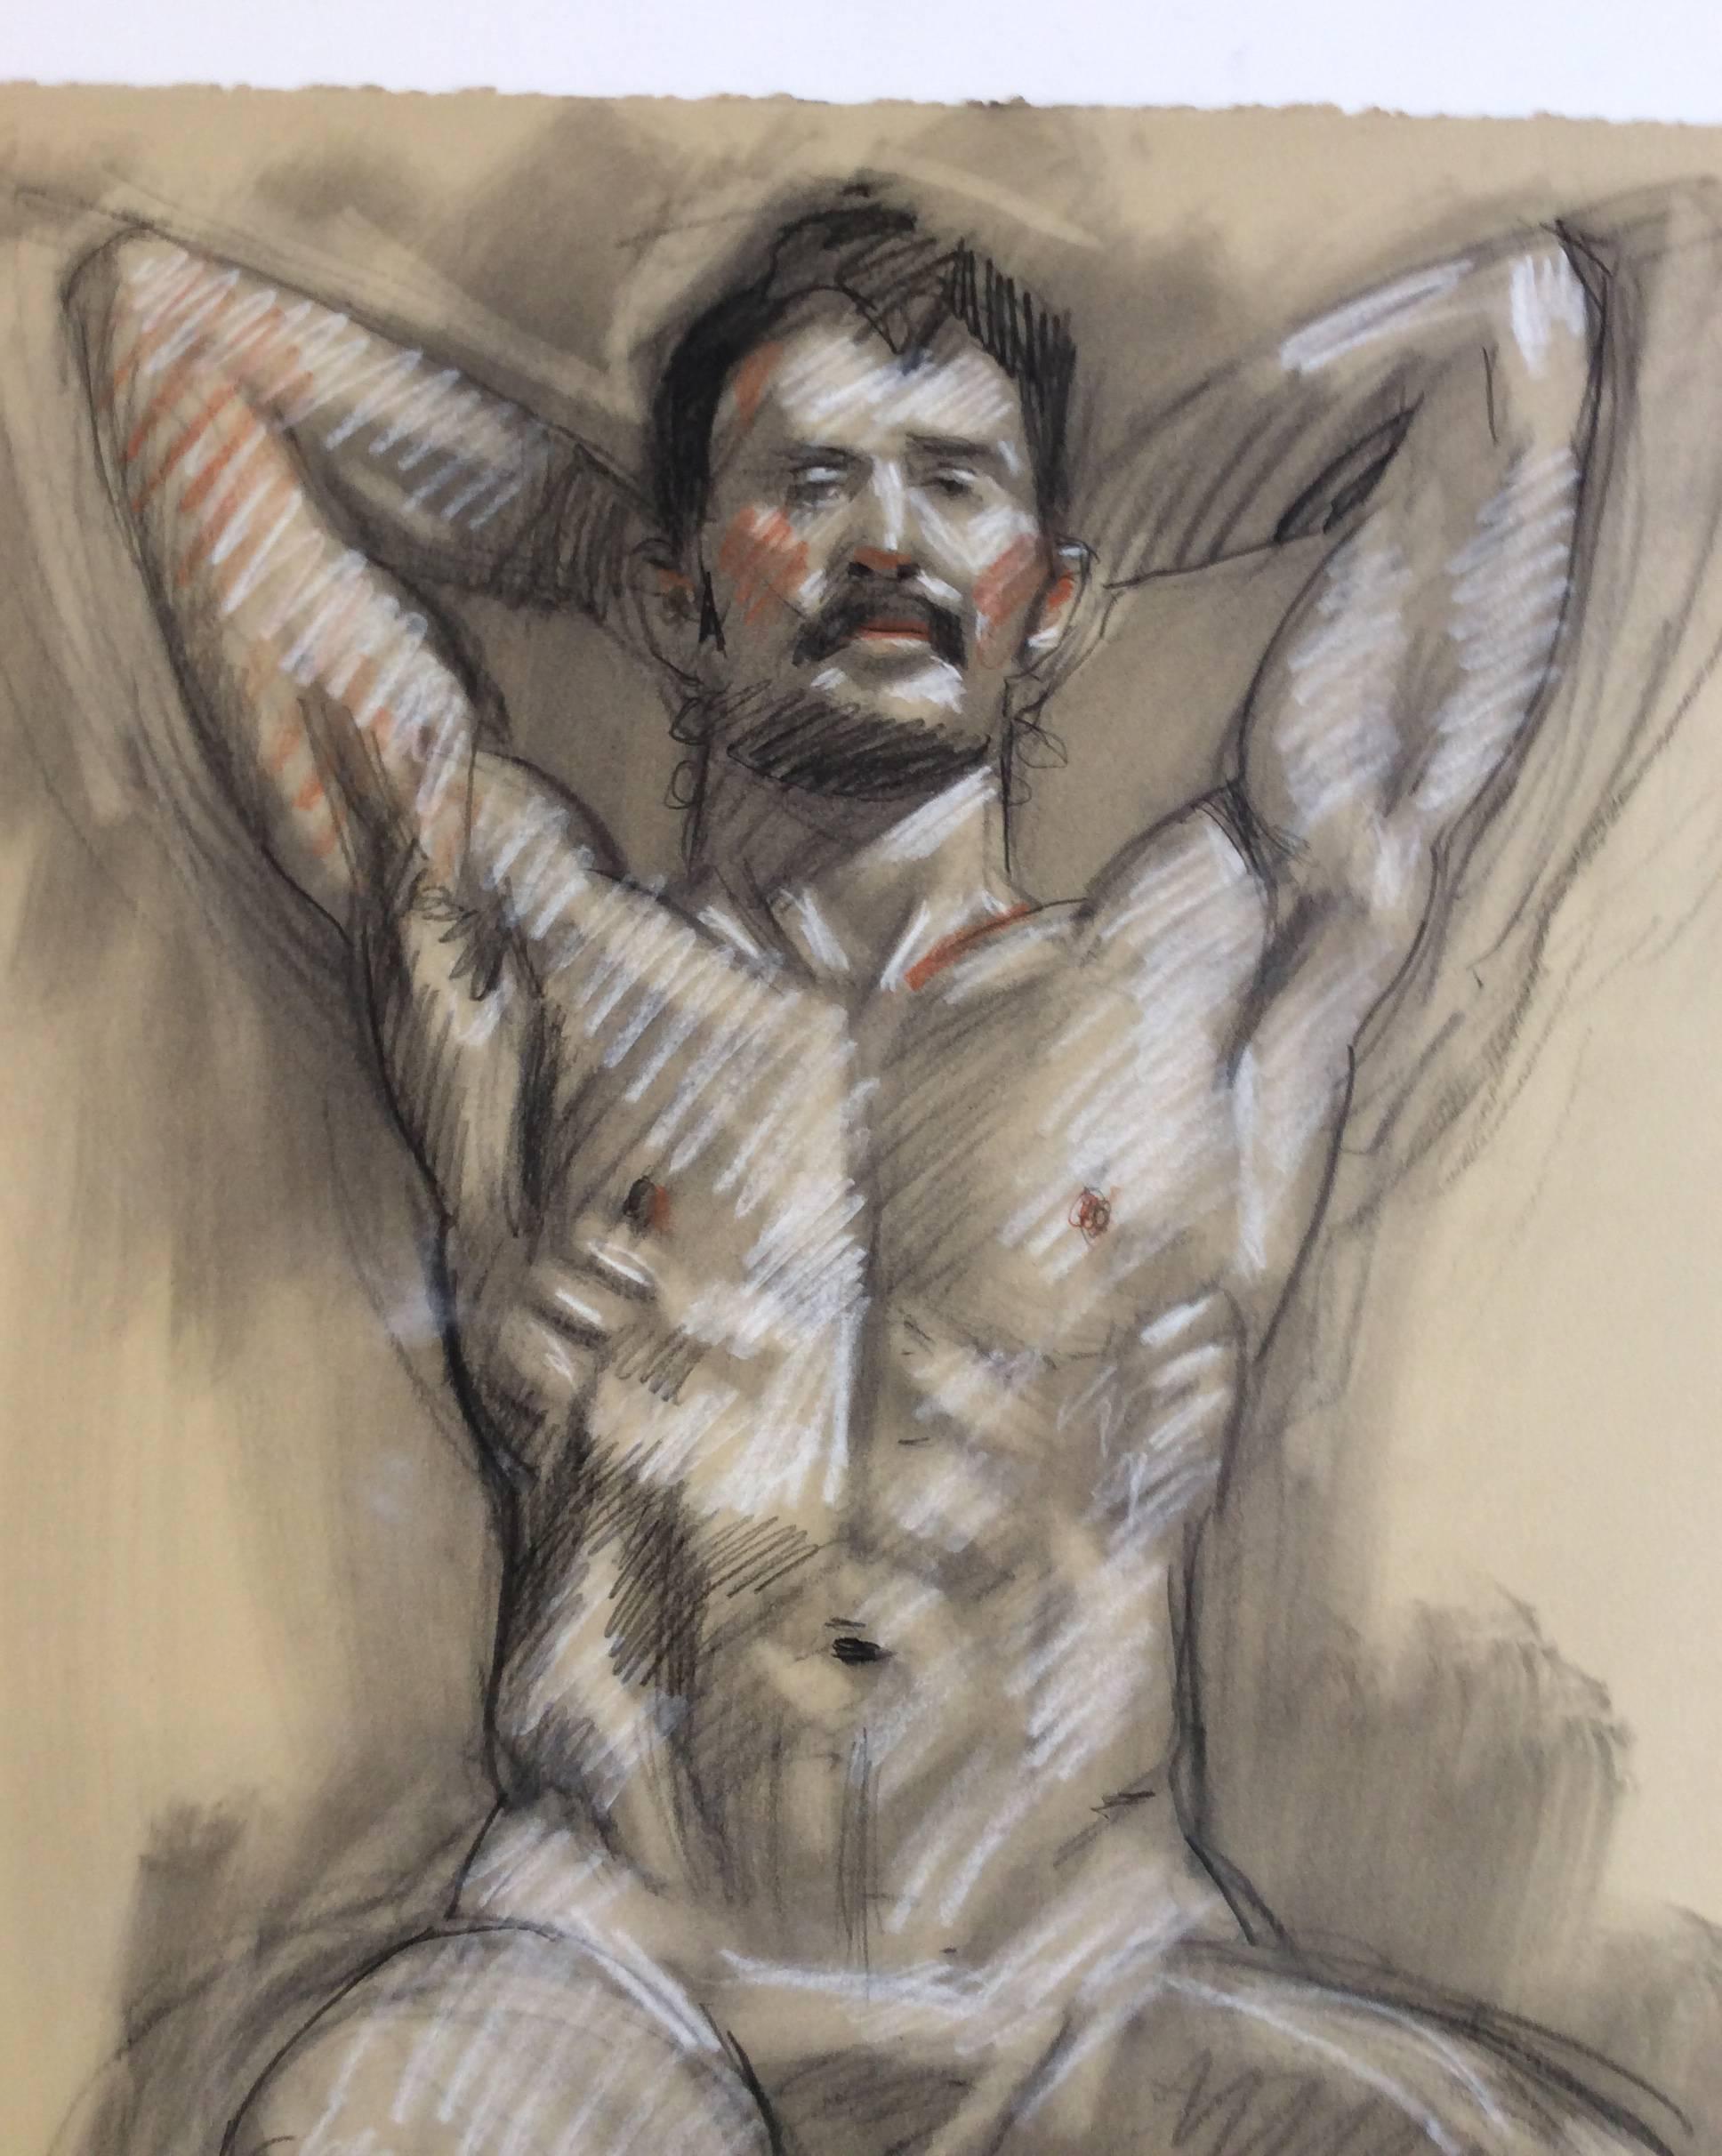 Mb 826 A (D'un dessin figuratif au fusain d'un nu masculin sur papier Arches) - Moderne Art par Mark Beard